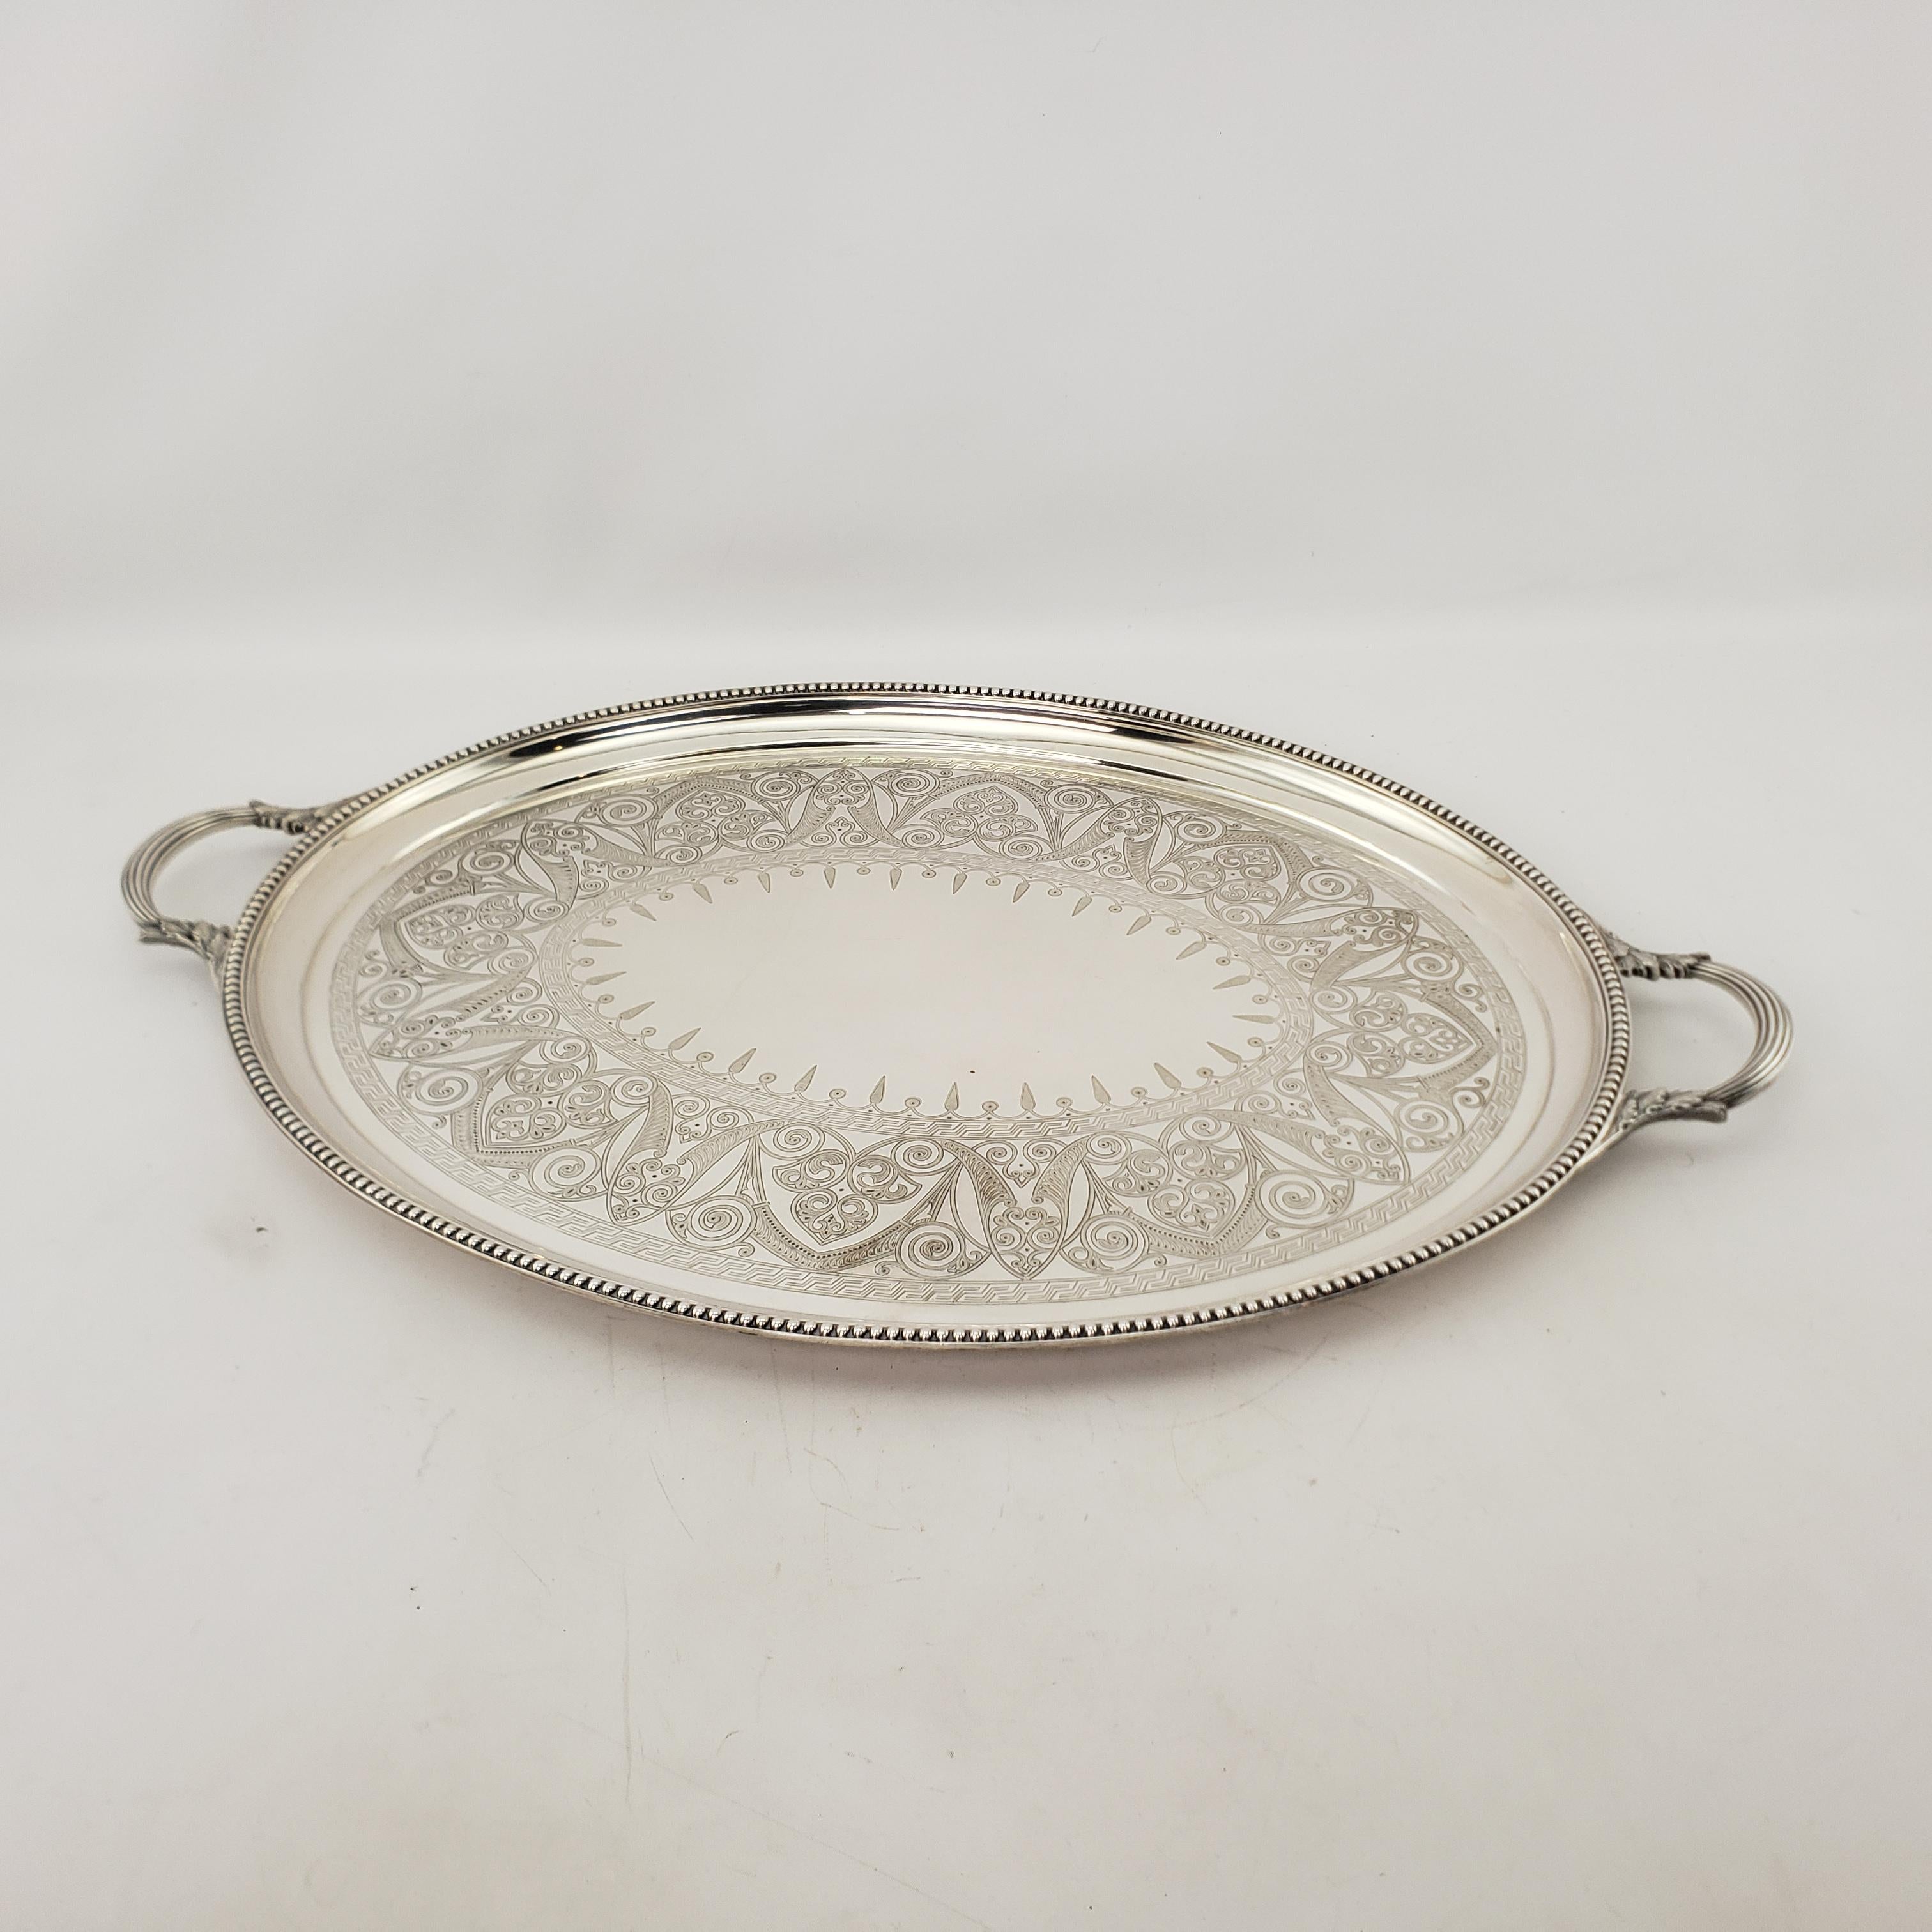 Dieses große antike ovale Serviertablett wurde von der bekannten Elkington Co. in England um 1920 im edwardianischen Stil hergestellt. Das Tablett besteht aus Silberblech über Kupfer und hat einen wulstigen Rand mit kunstvoller stilisierter